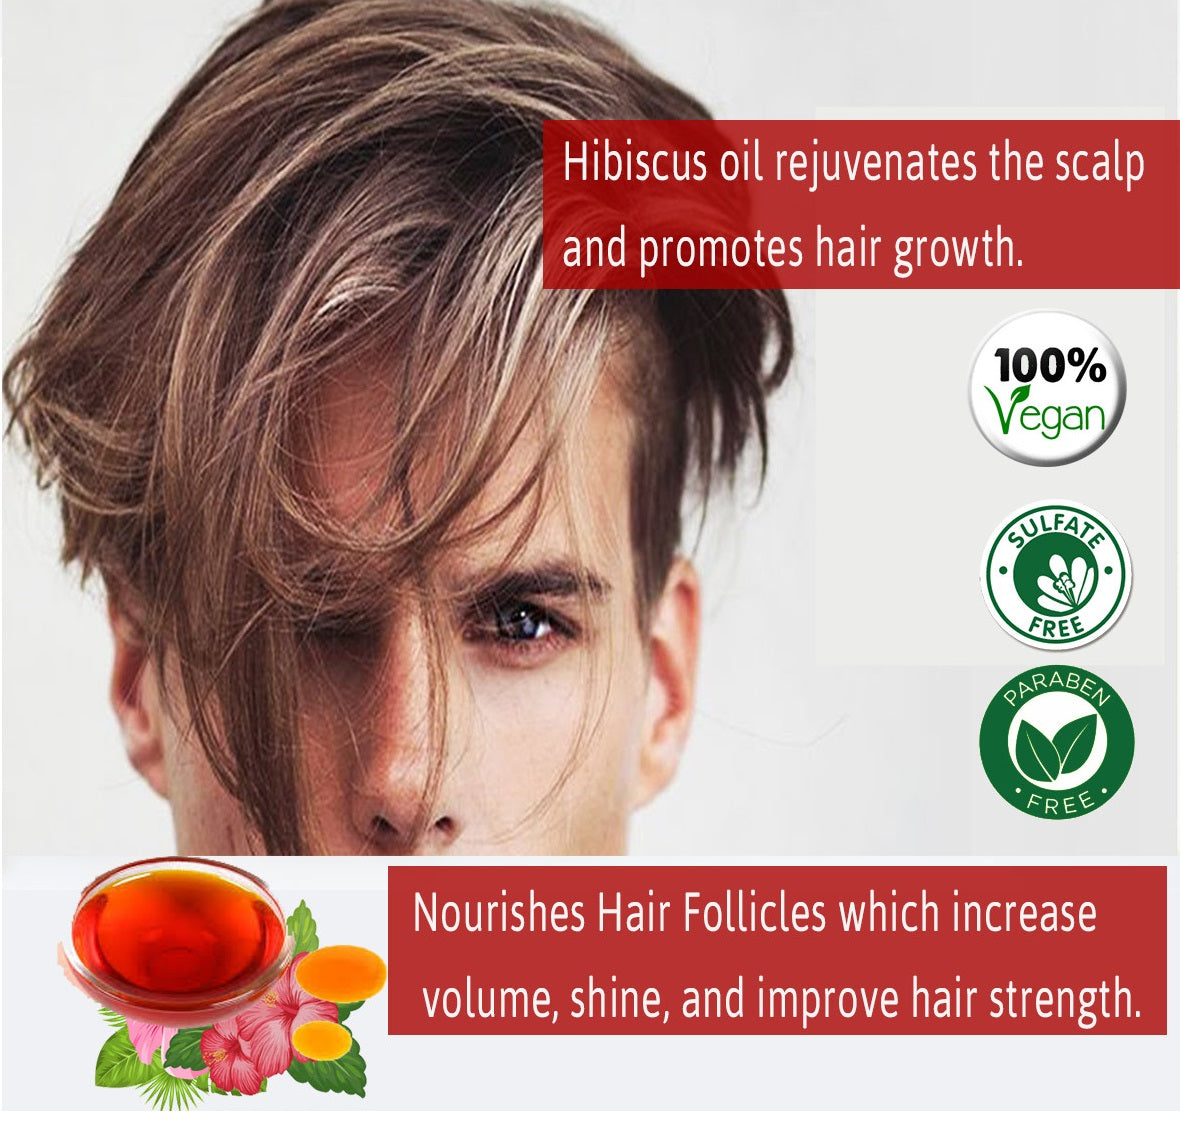 Seyal Hibiscus Oil For Hair Growth & Hair Fall Control ( Gudhal ka Tail ) - 250ml